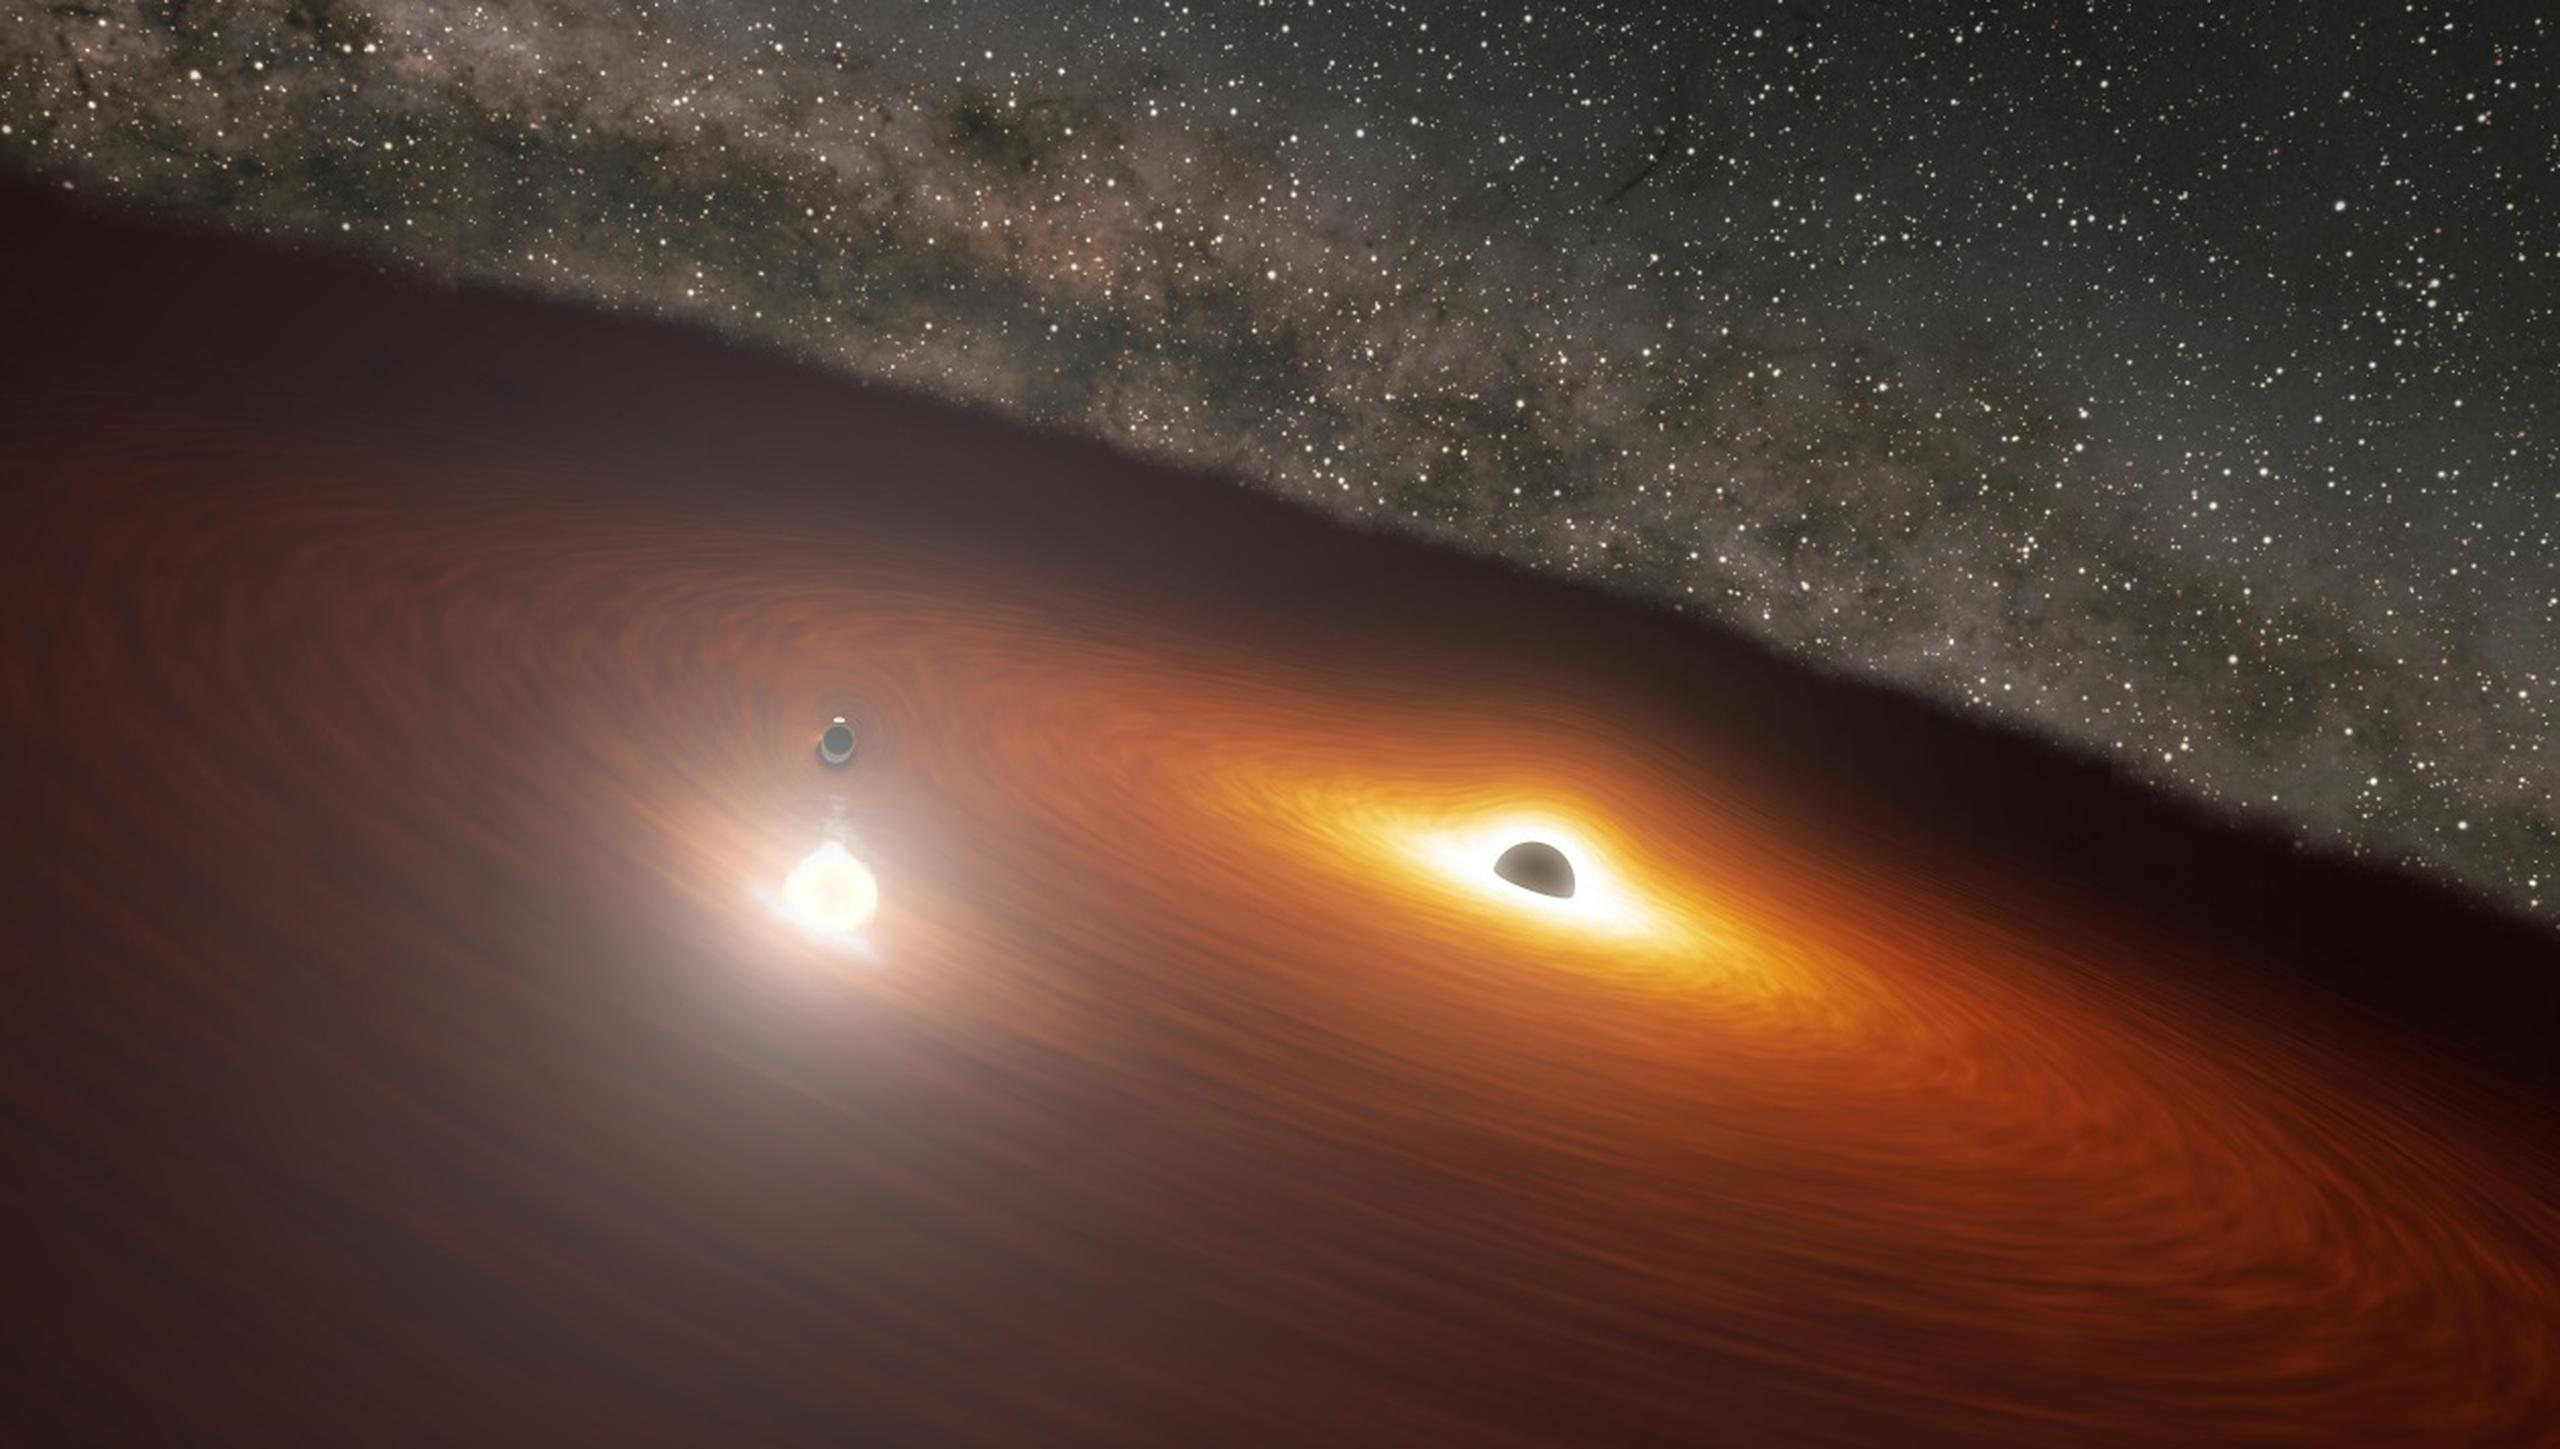 La comparación de las observaciones espaciales y terrestres ha revelado que la galaxia OJ 287, que pertenece al grupo de los “blázares” -las fuentes de radiación continua más potentes del universo-, no alberga uno, sino dos agujeros negros “supermasivos”.